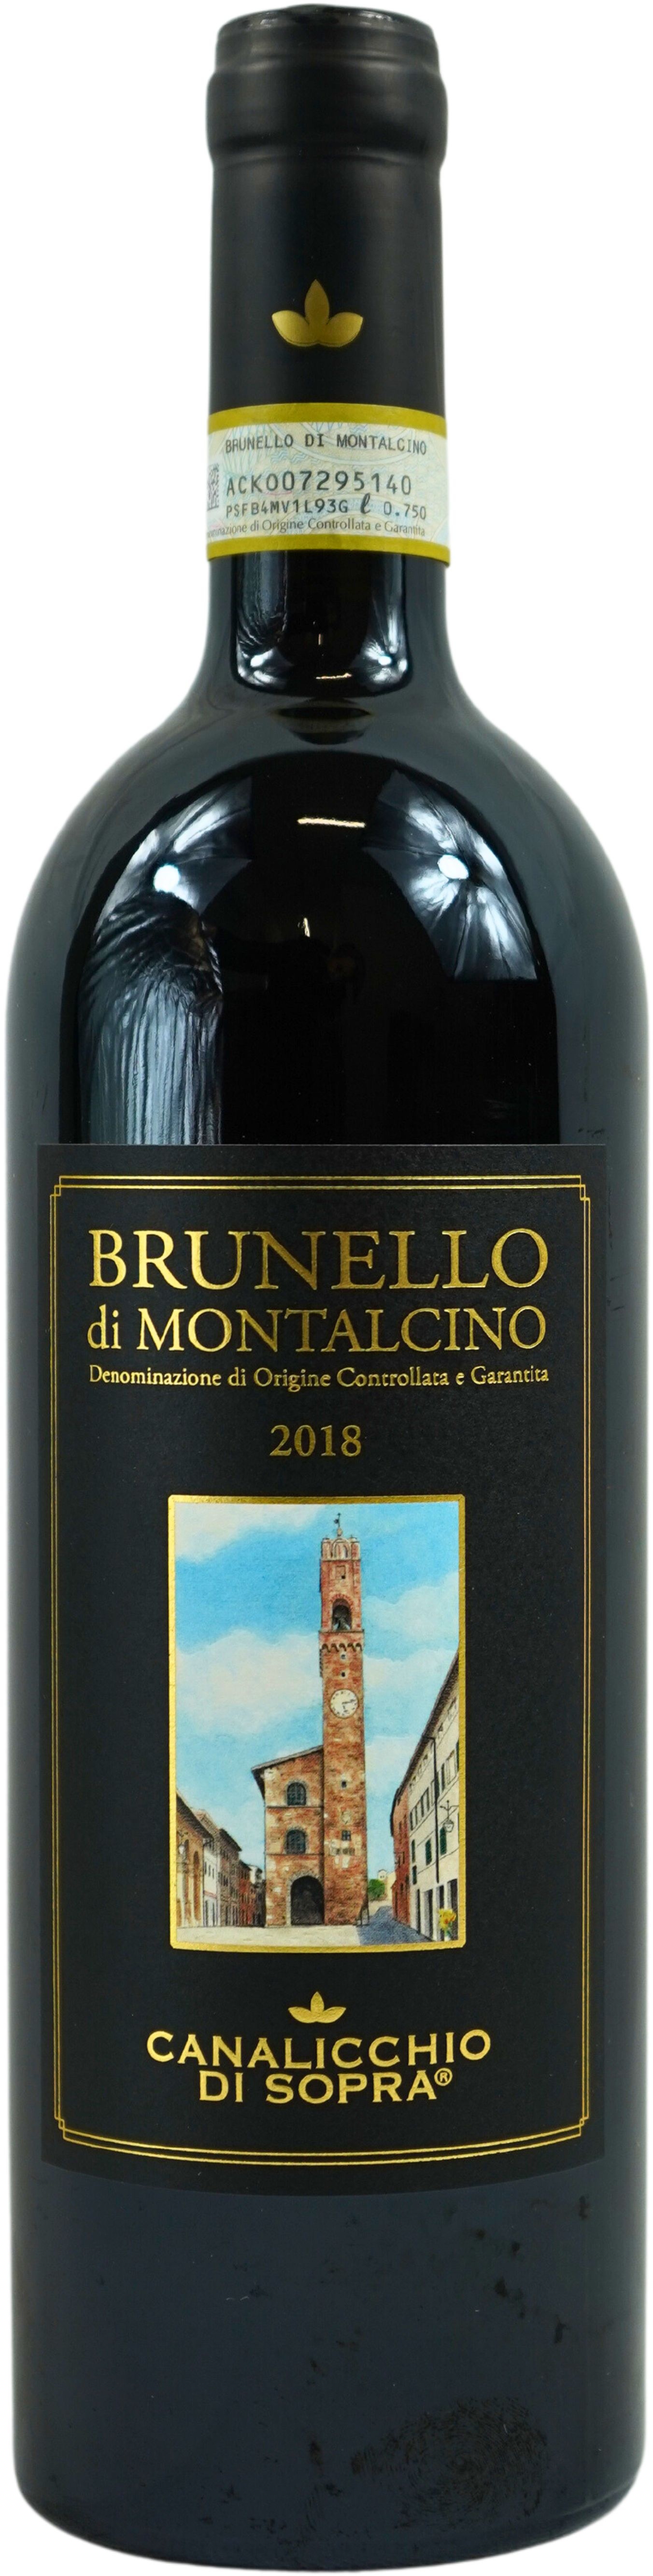 2018 Brunello di Montalcino - Canalicchio di Sopra